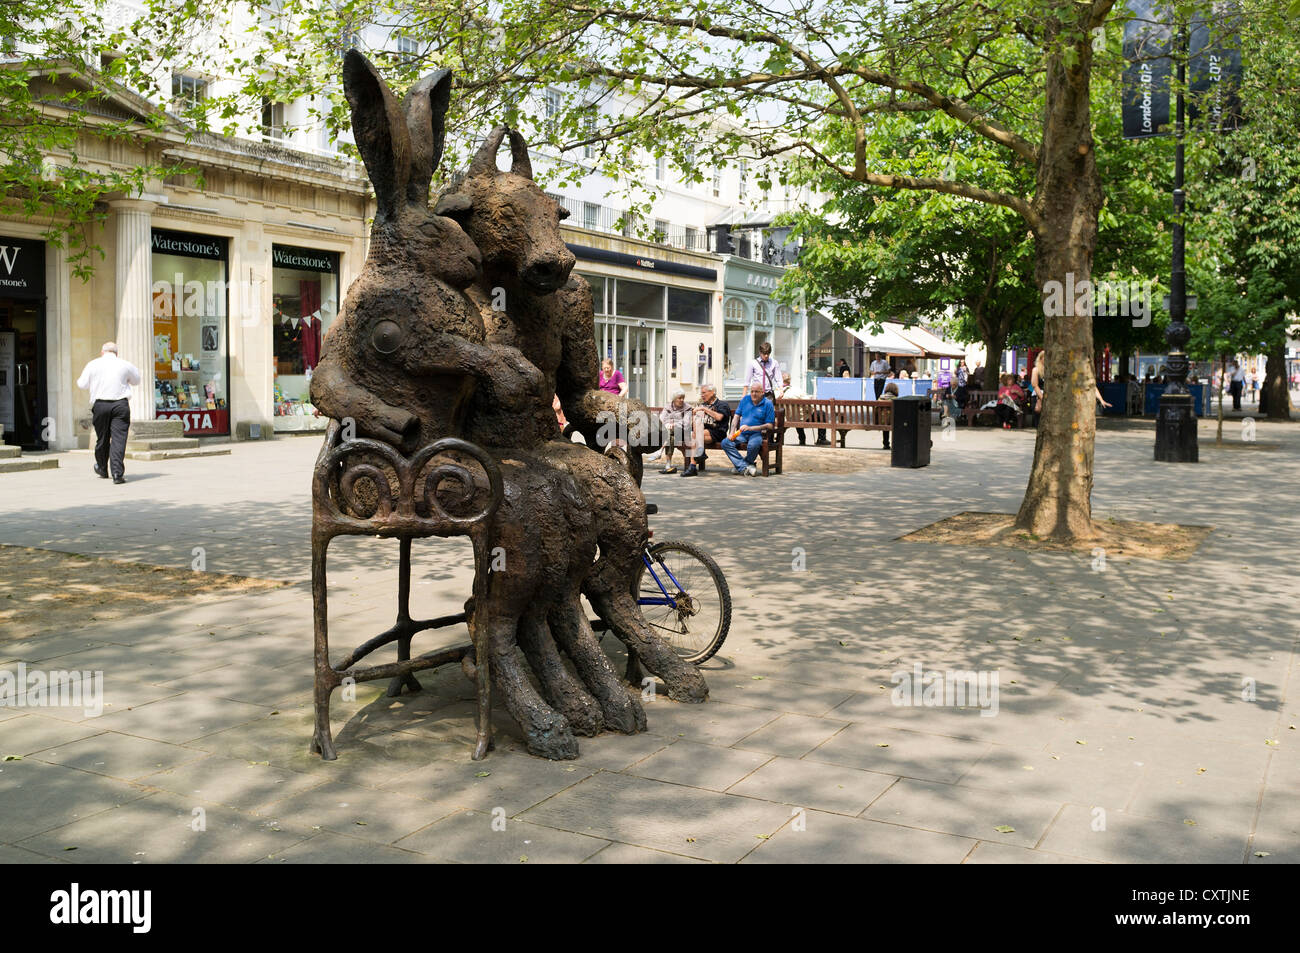 dh die Promenade CHELTENHAM GLOUCESTERSHIRE die Minotaur und die Hare Bronzeskulptur von Sophie Ryder Moderne Kunst Statue im Freien Stockfoto